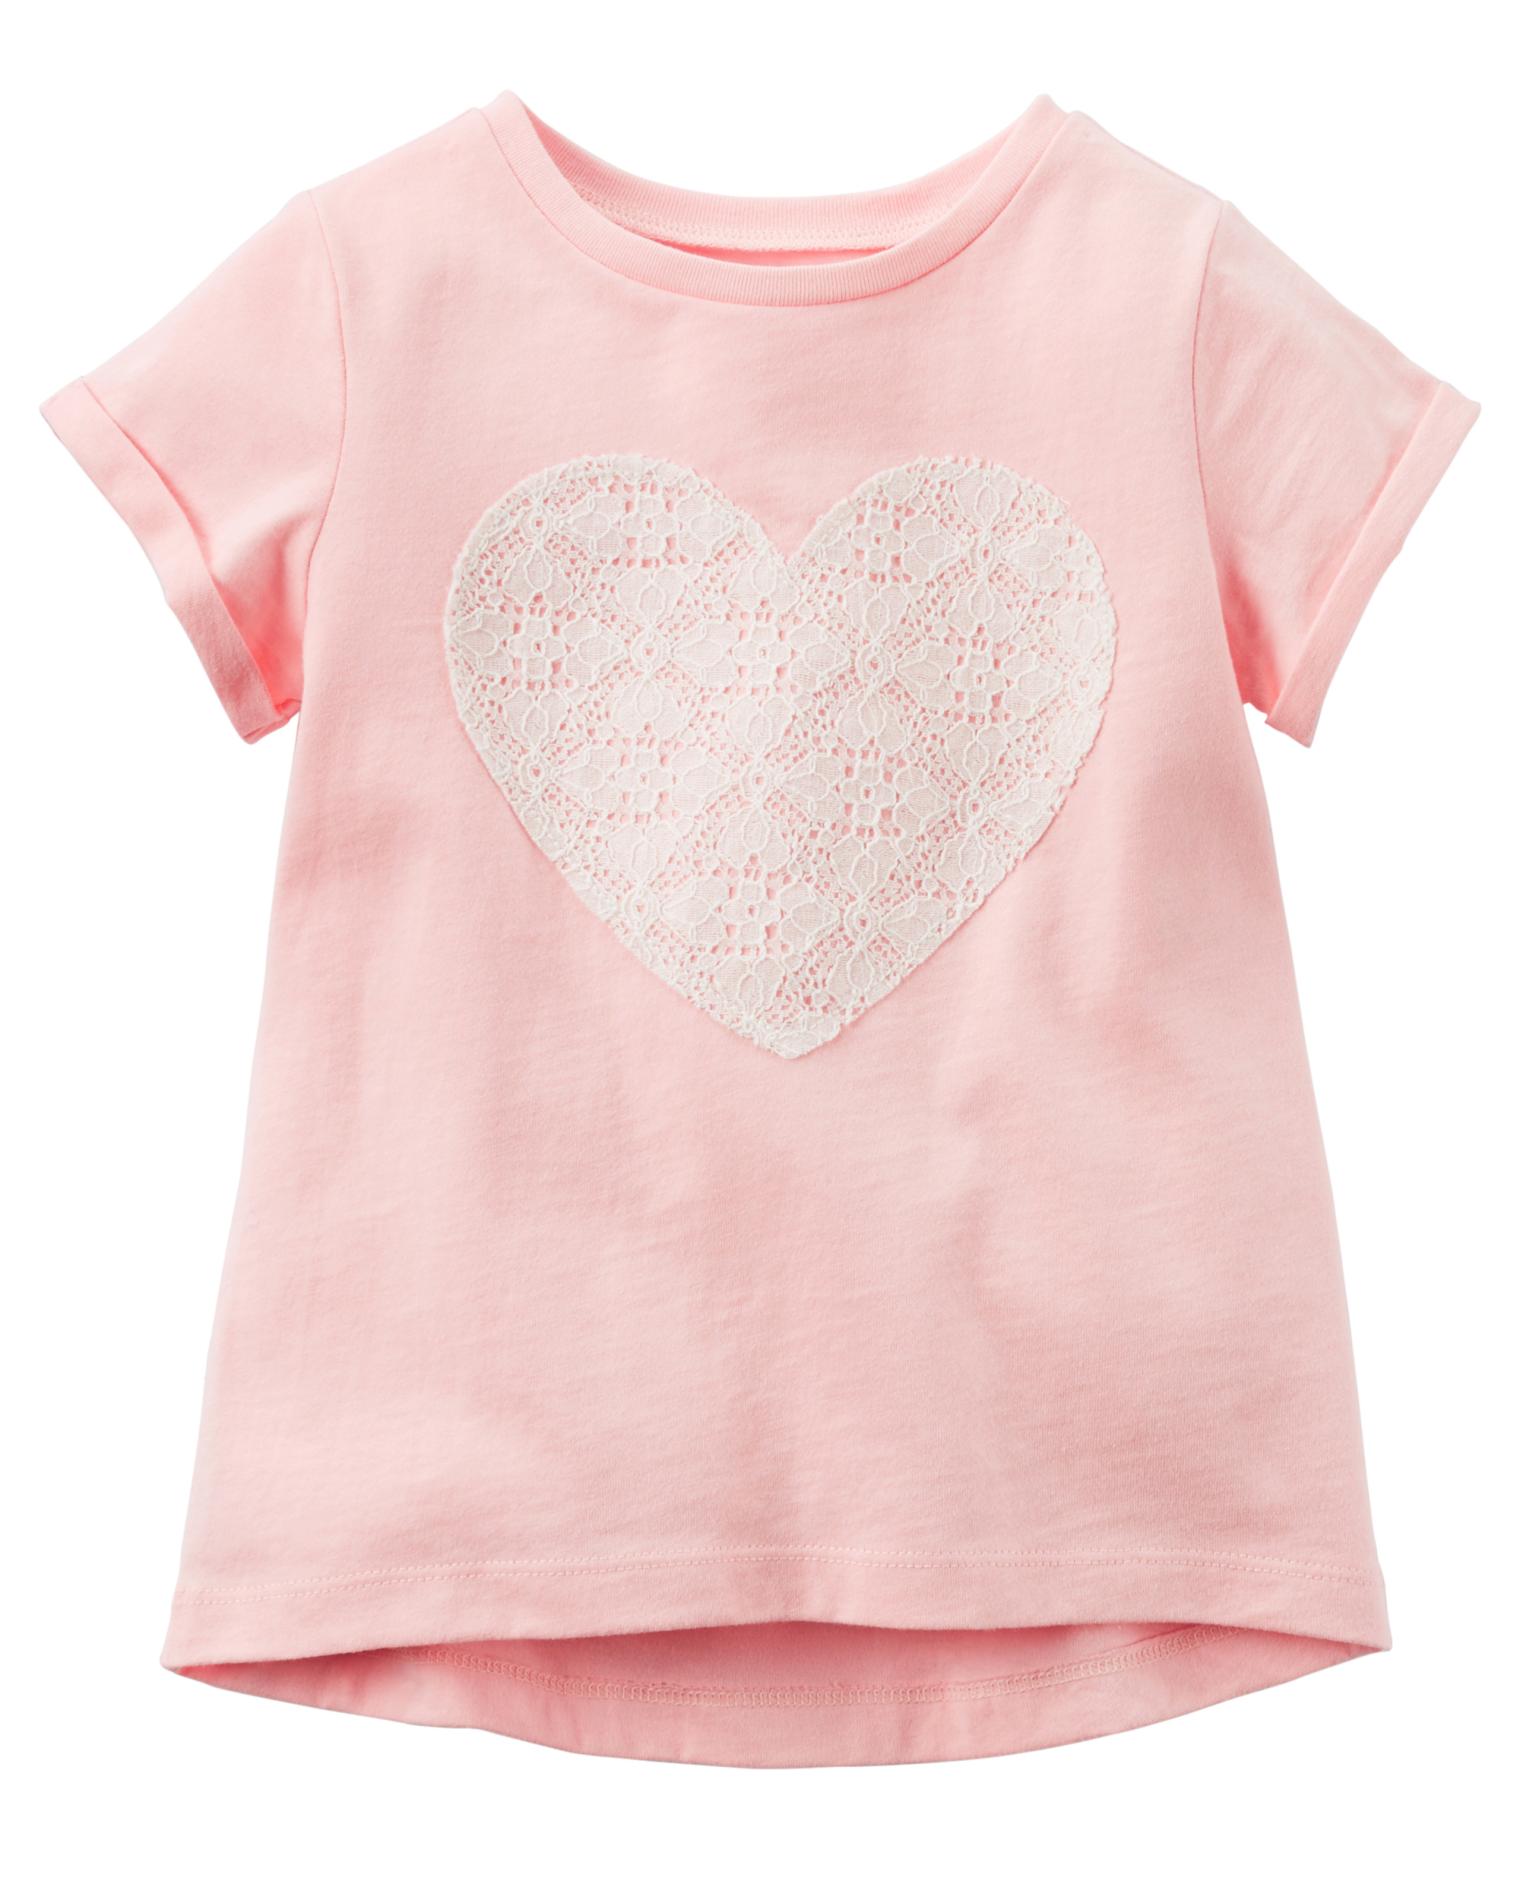 Carter's Girls' T-Shirt - Heart